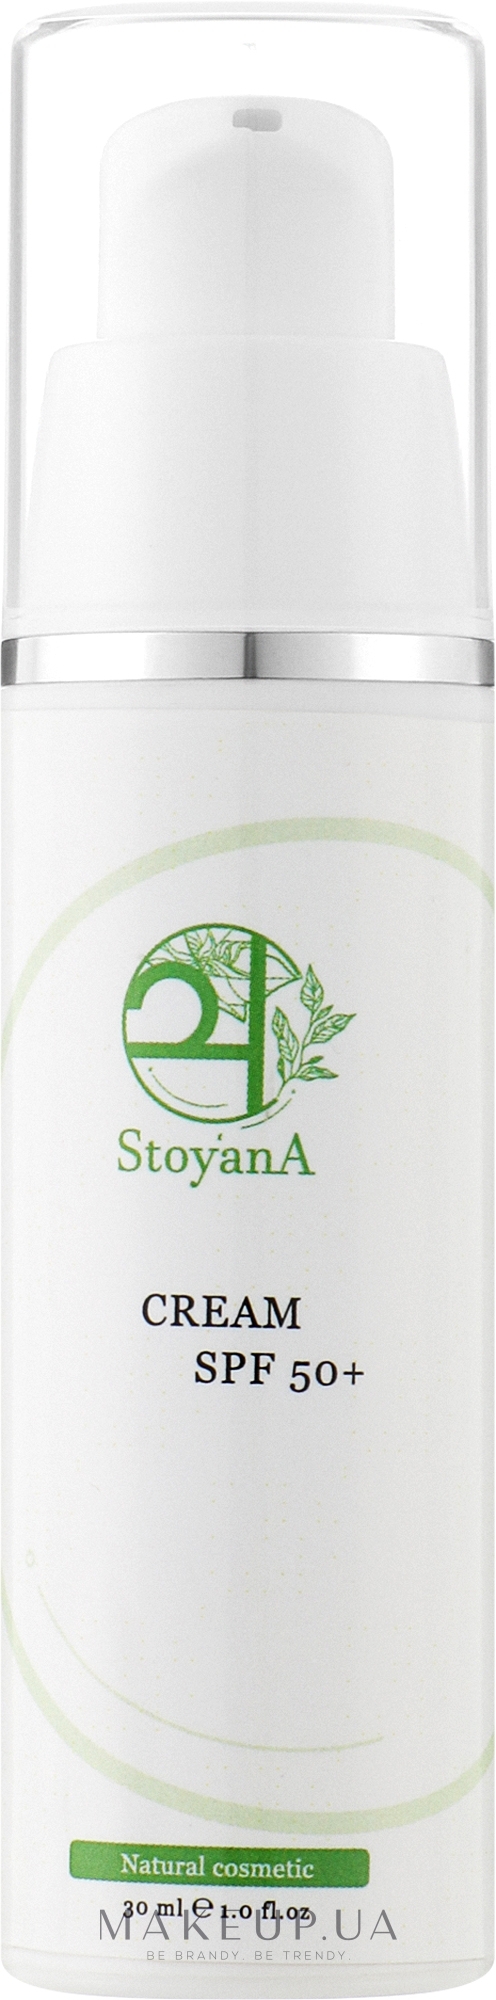 Солнцезащитный крем для лица с SPF 50+ - StoyanA Cream SPF 50+ — фото 30ml